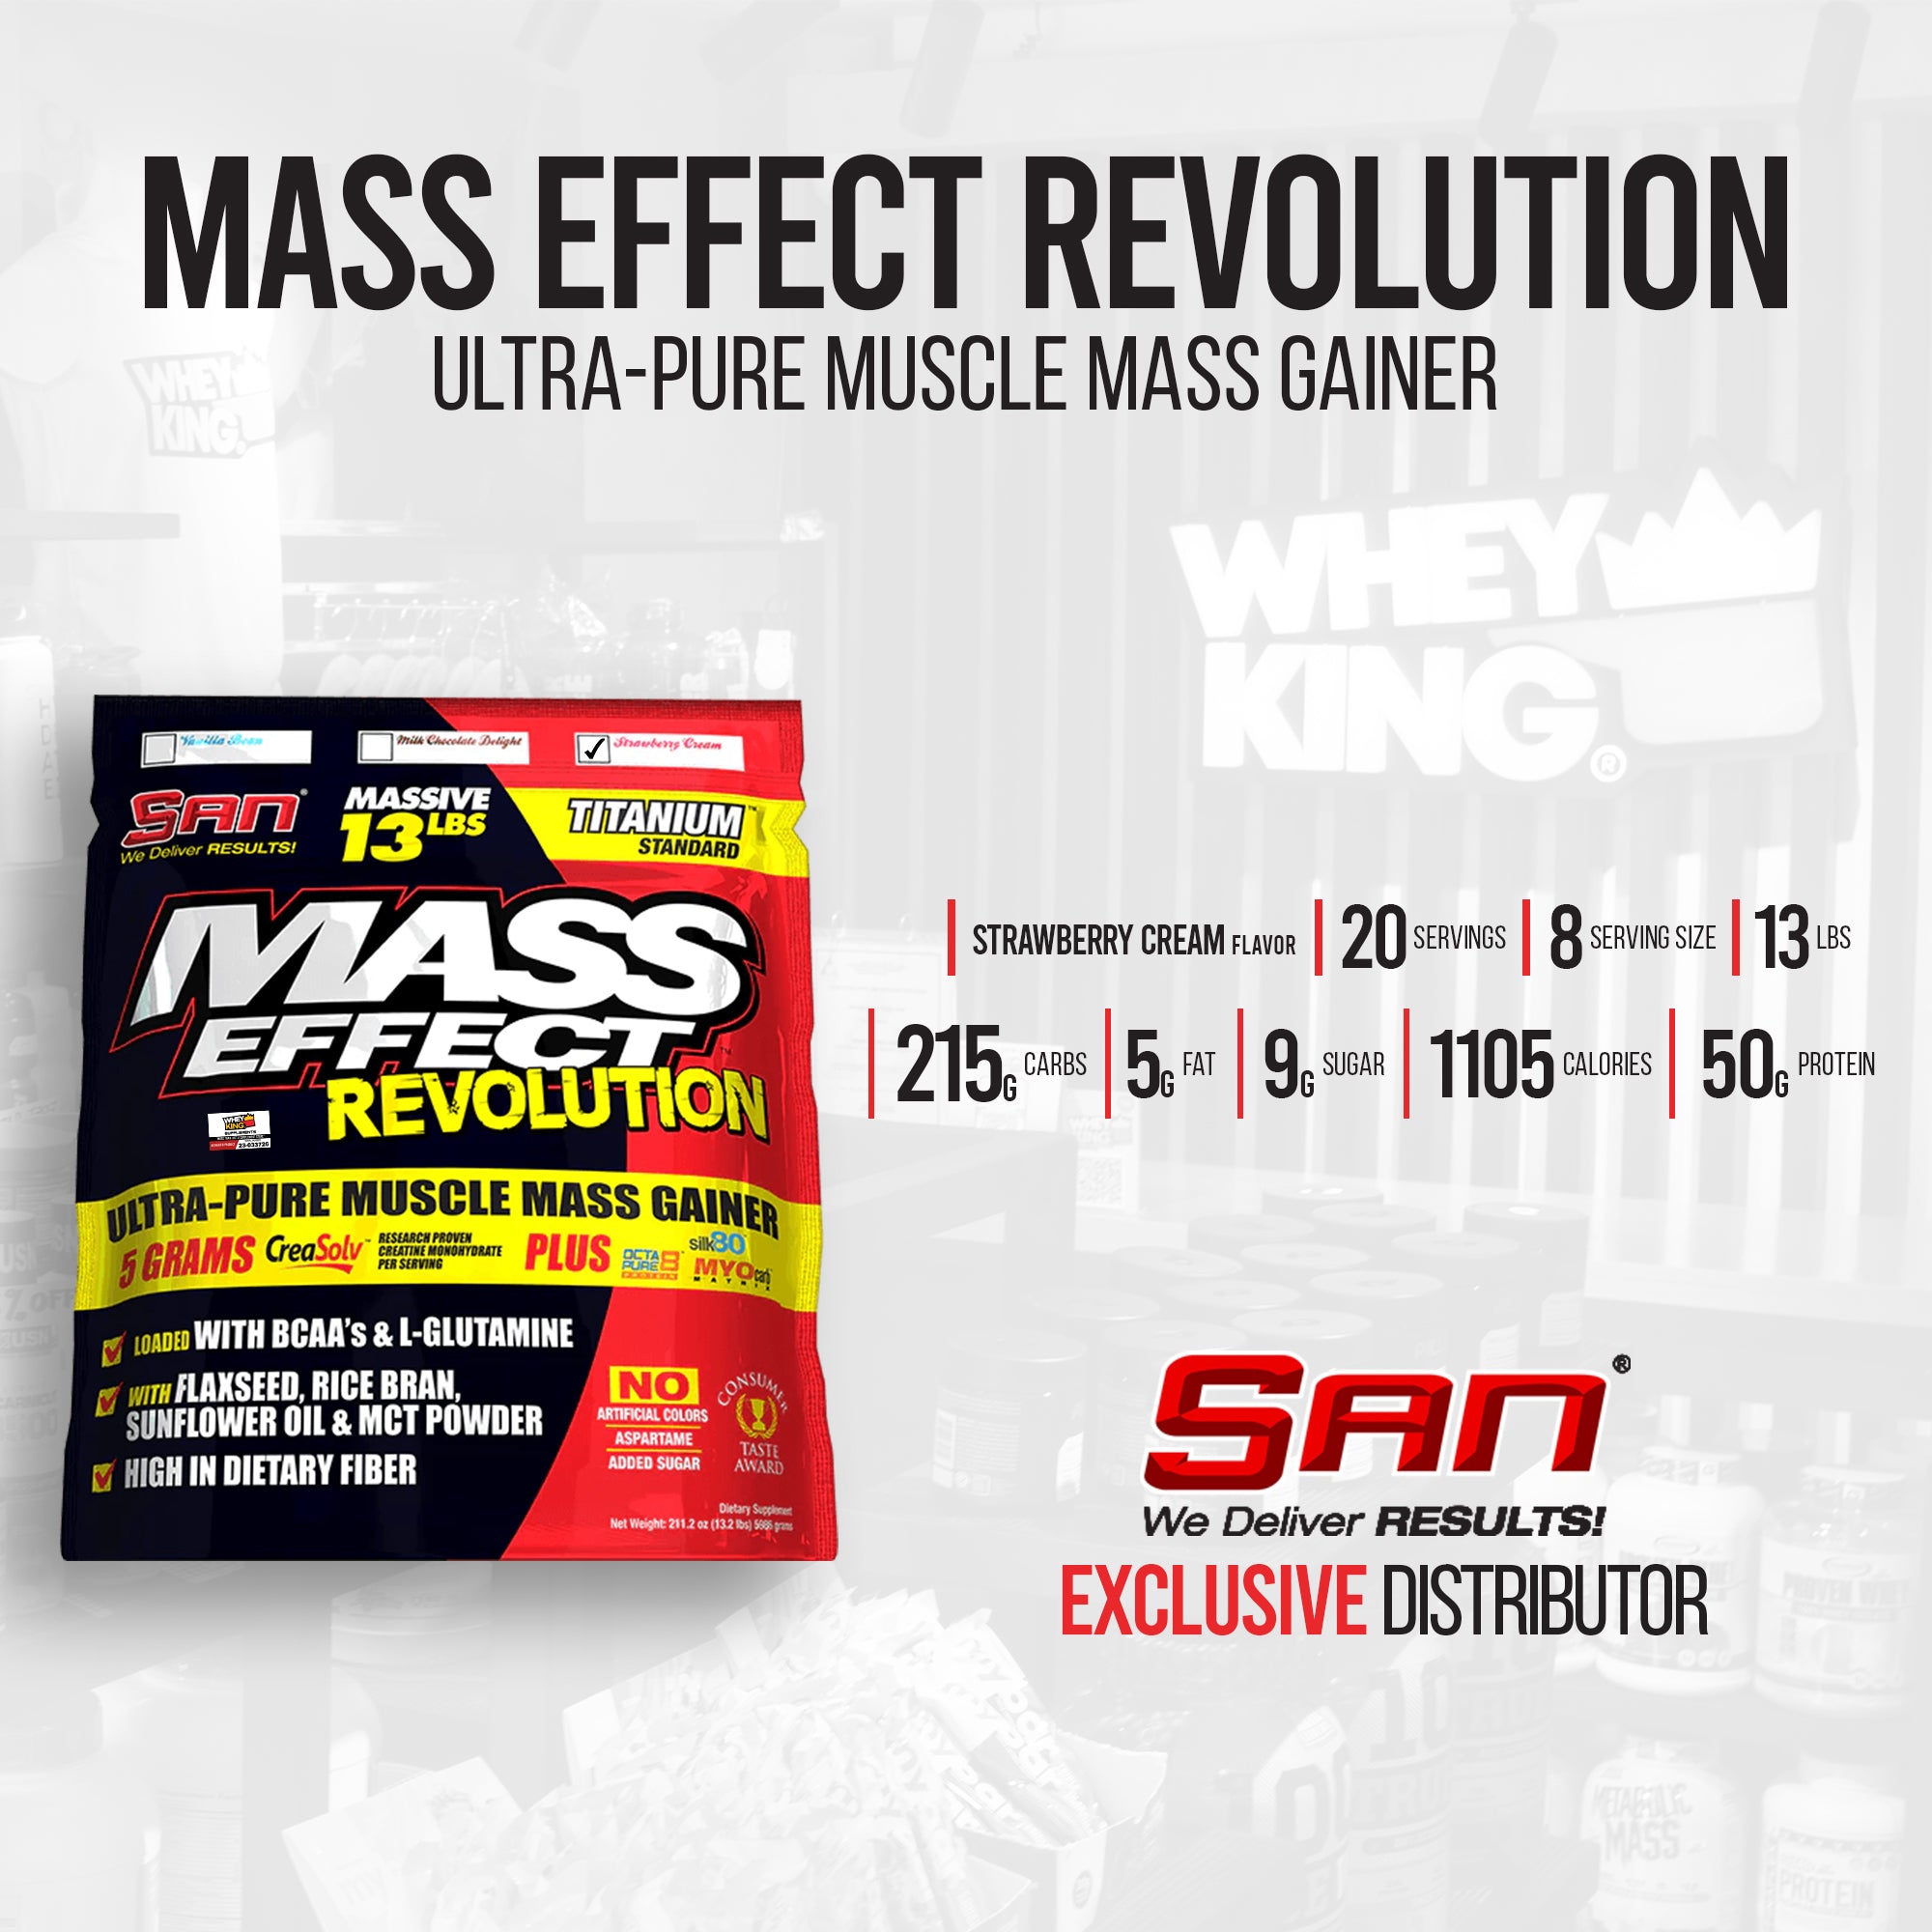 SAN Mass Effect Revolution Ultra-Pure Muscle Mass Gainer - 13lbs